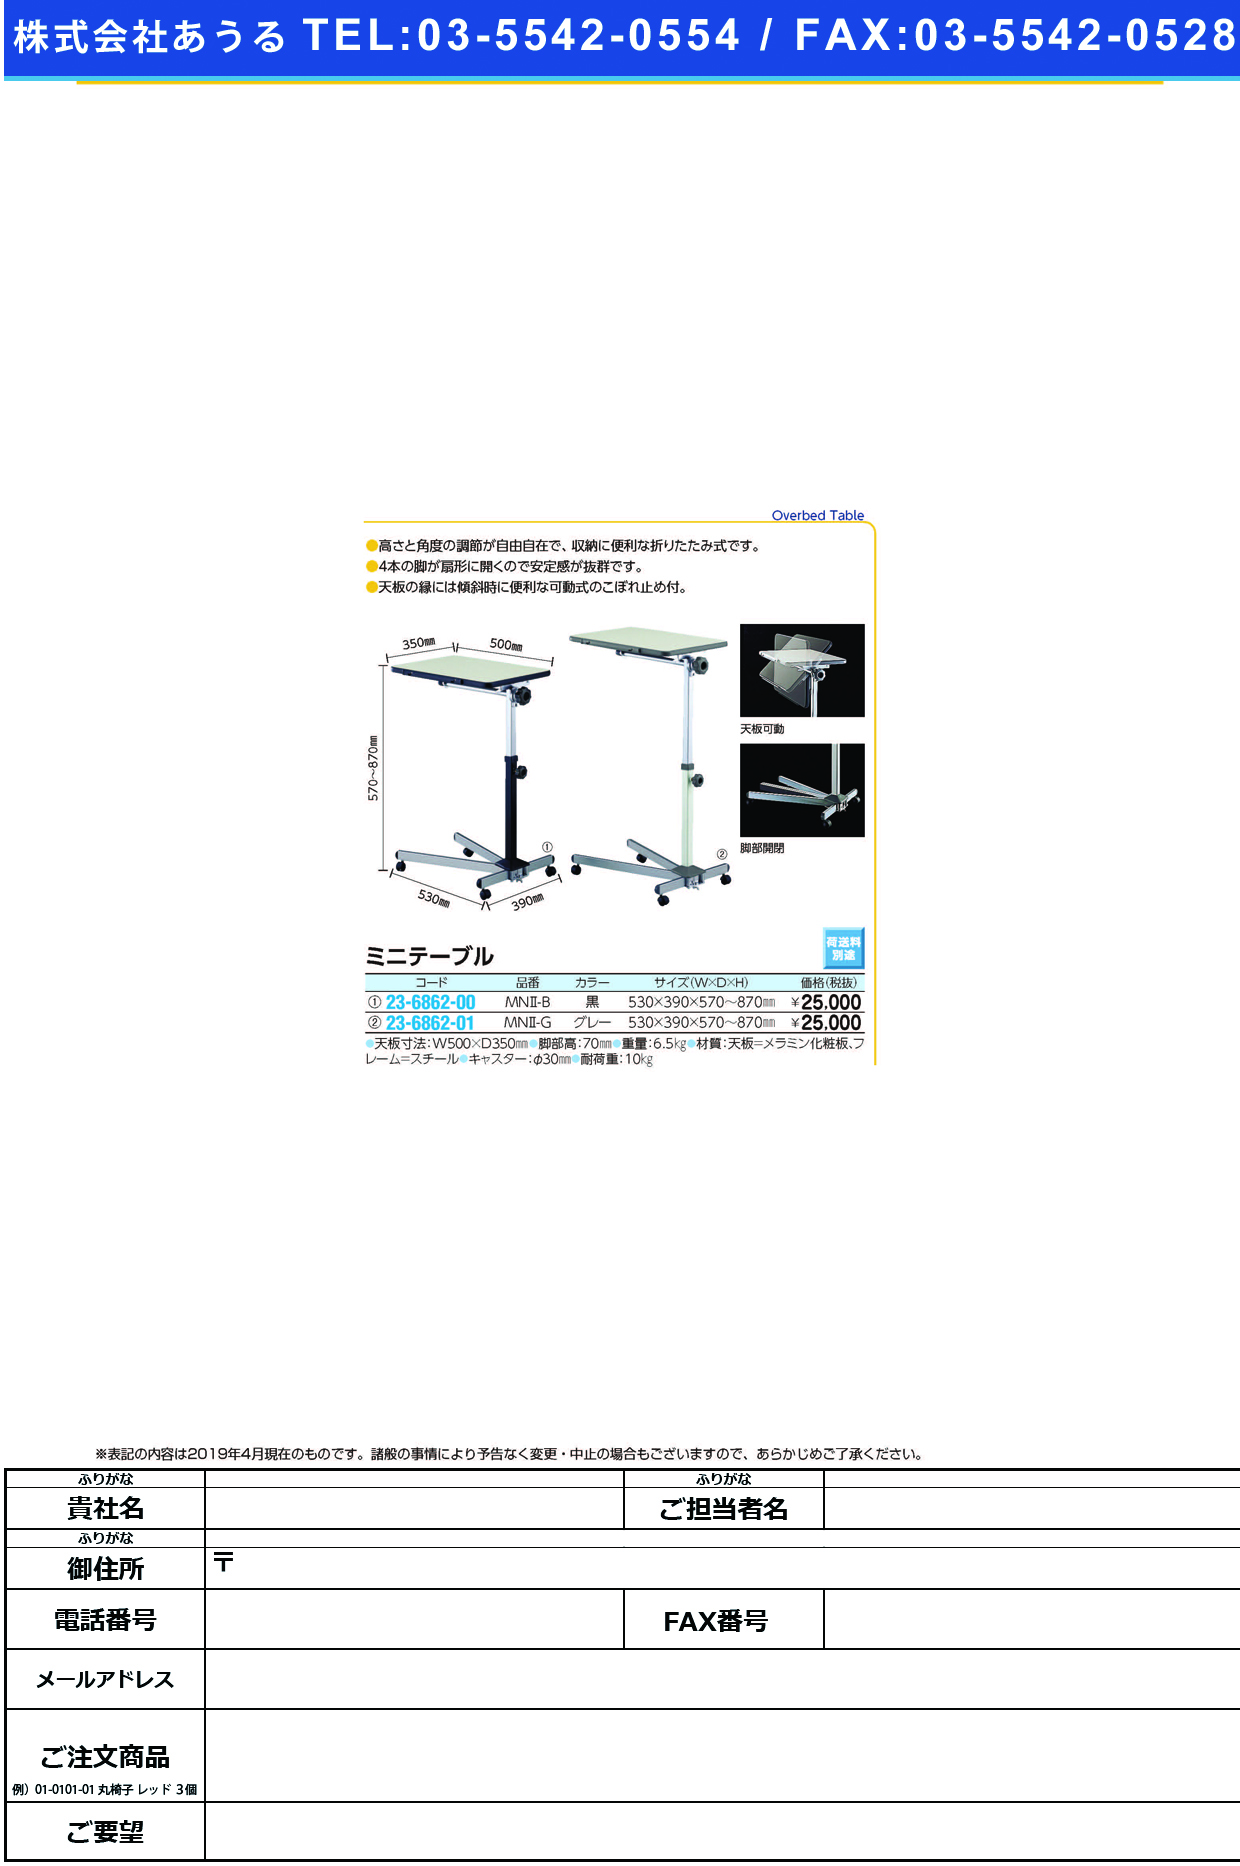 (23-6862-00)ミニテーブル MN2-B(ﾌﾞﾗｯｸ) ﾐﾆﾃｰﾌﾞﾙ【1台単位】【2019年カタログ商品】